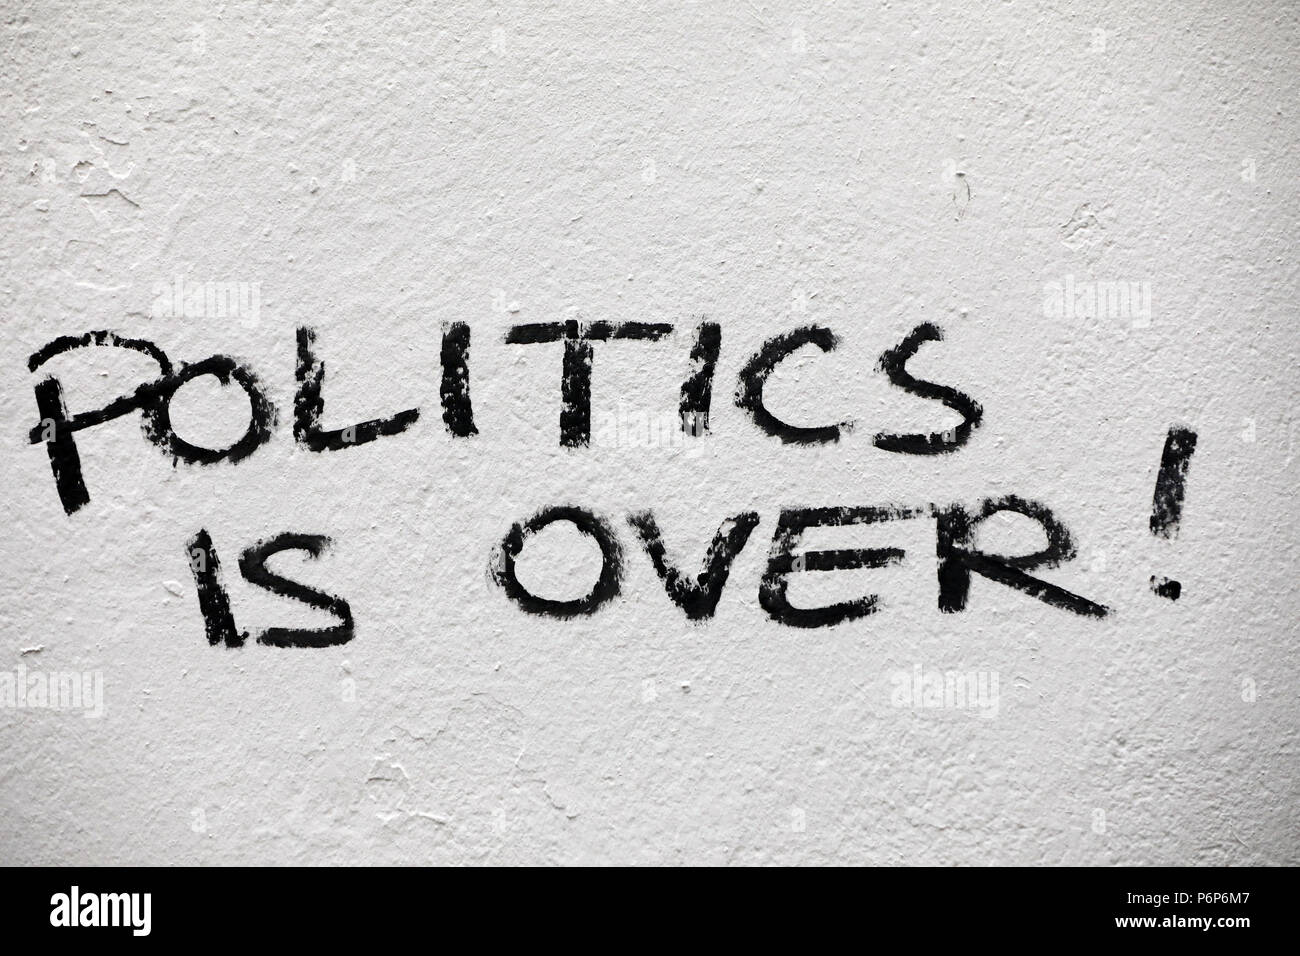 Graffiti sur un mur. La politique n'est plus ! Bâle. La Suisse. Banque D'Images